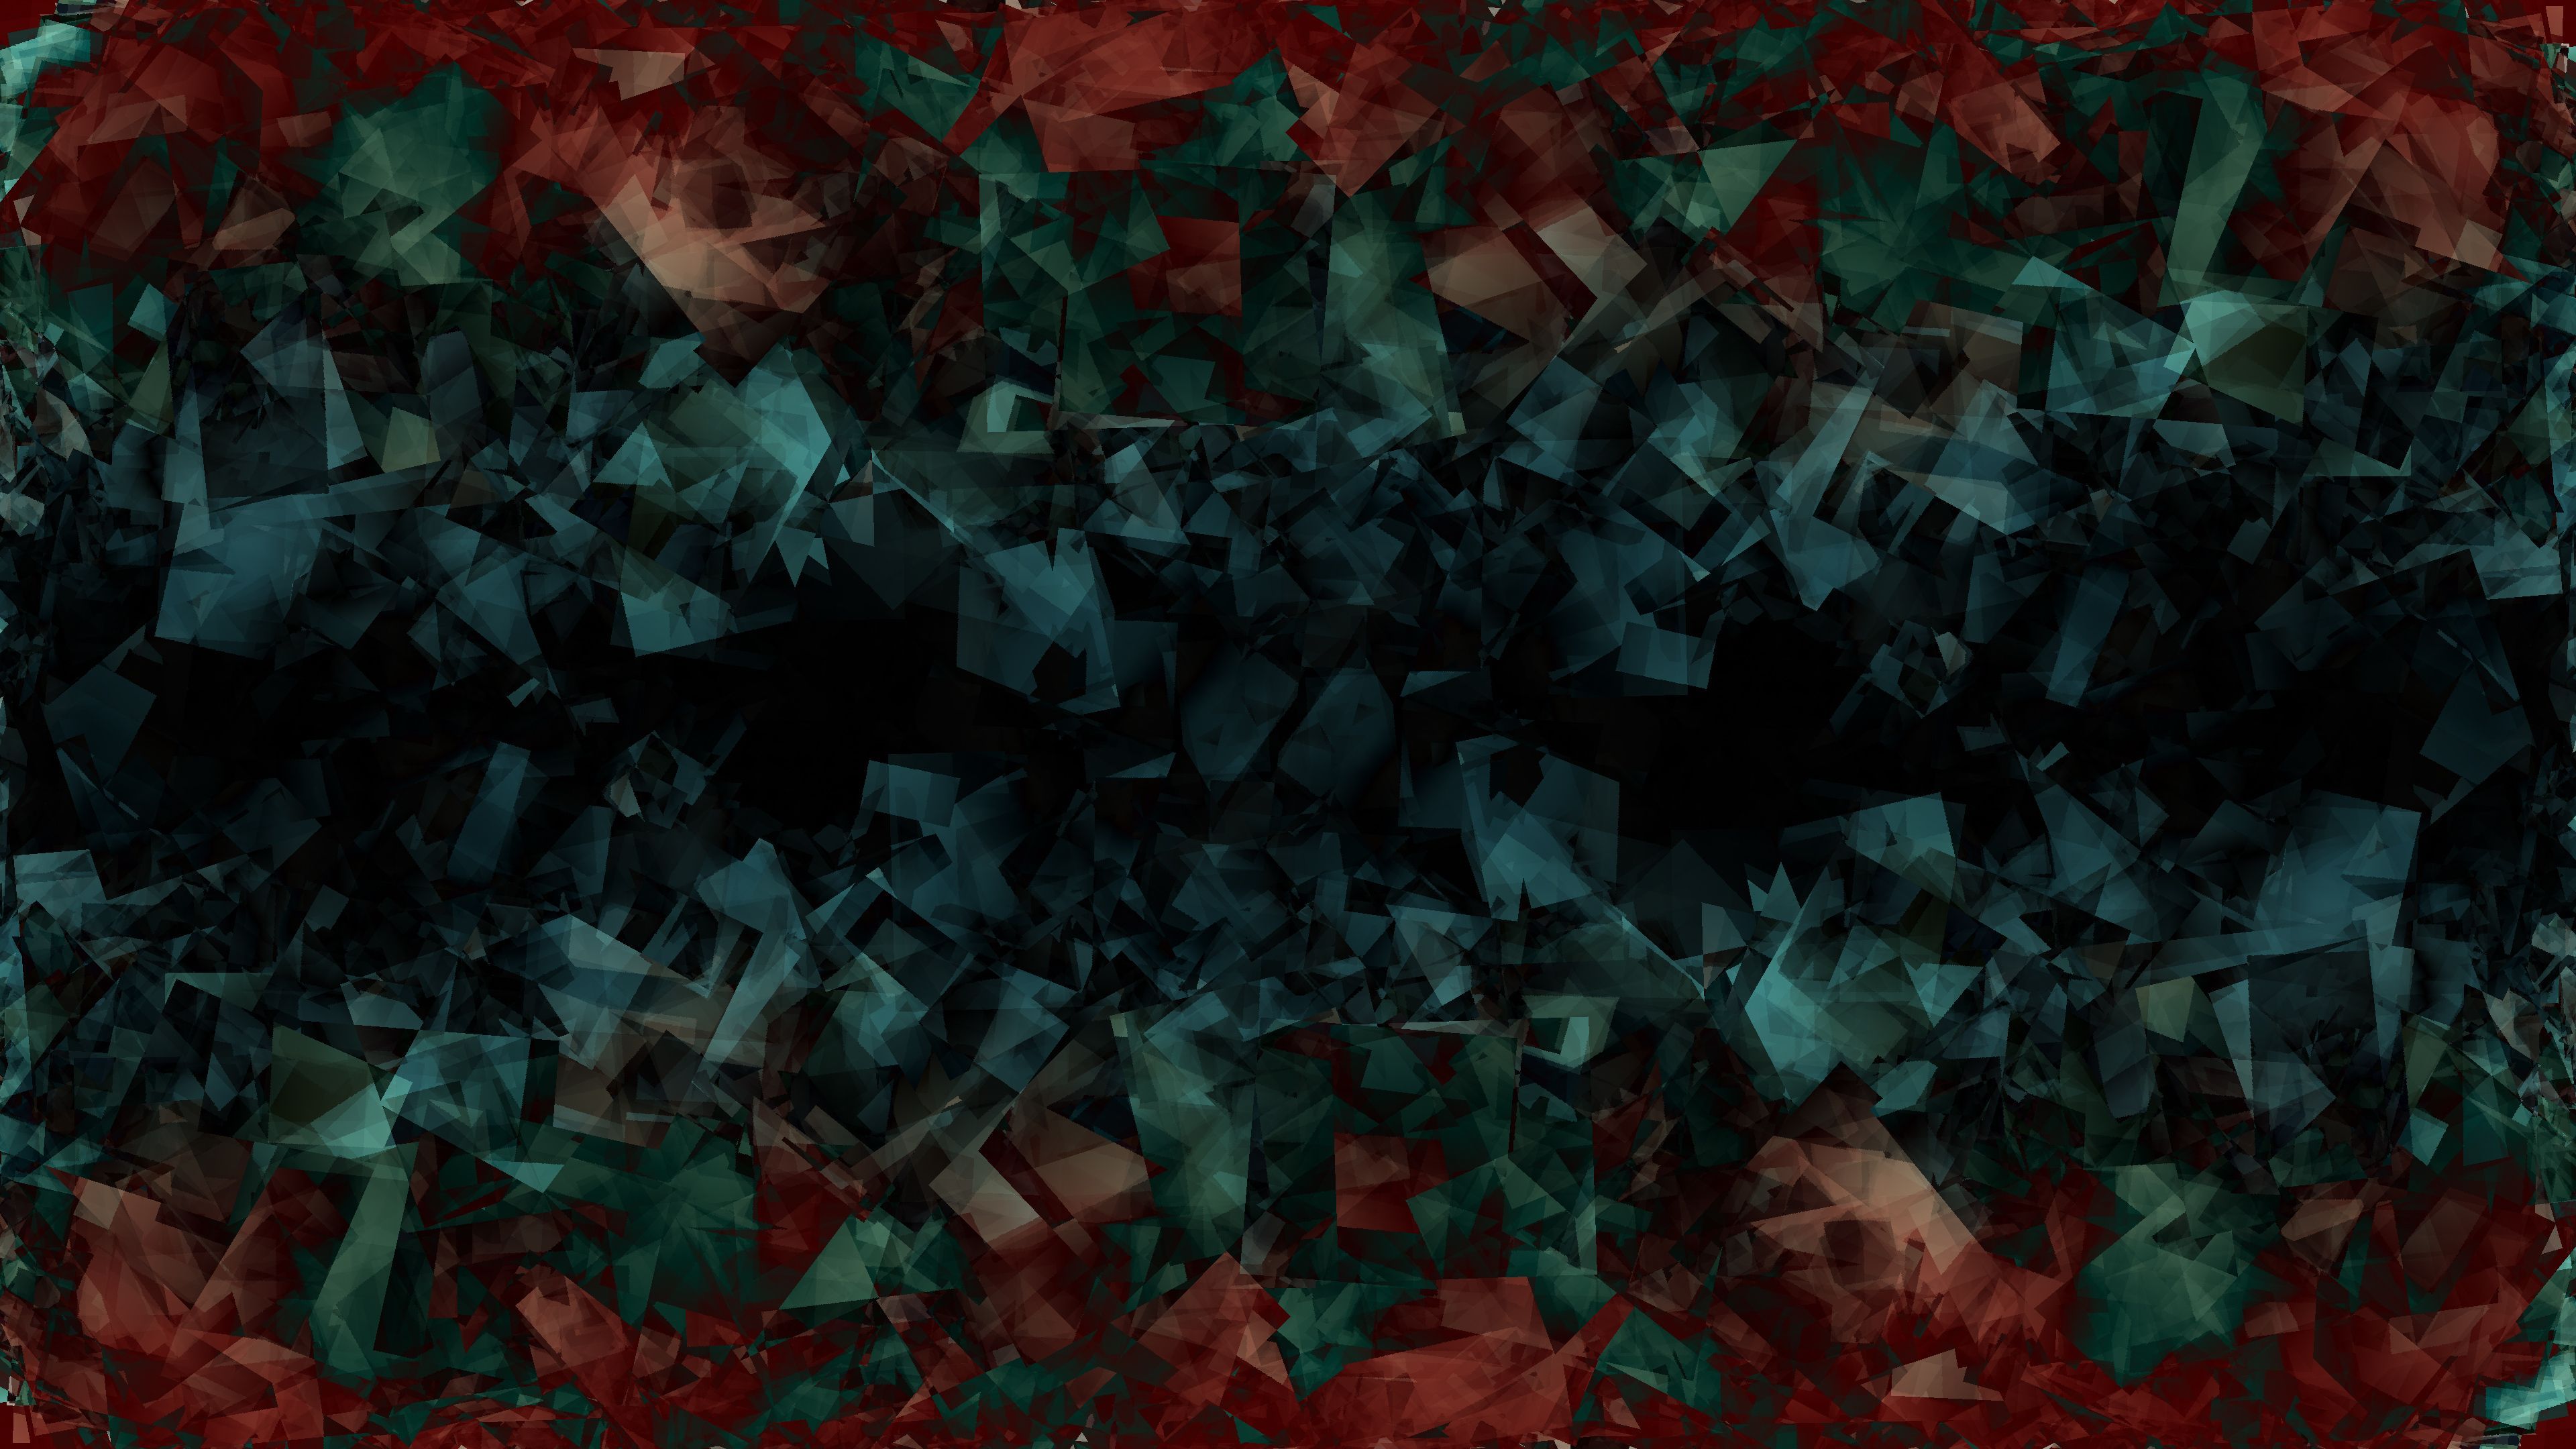 Blue Crystals Dark Green Red Hd Wallpaper, Dark Wallpaper, Abstract Wallpaper, 4k Wallpaper, 3D Wallpaper. Abstract Wallpaper, Dark Wallpaper, HD Wallpaper